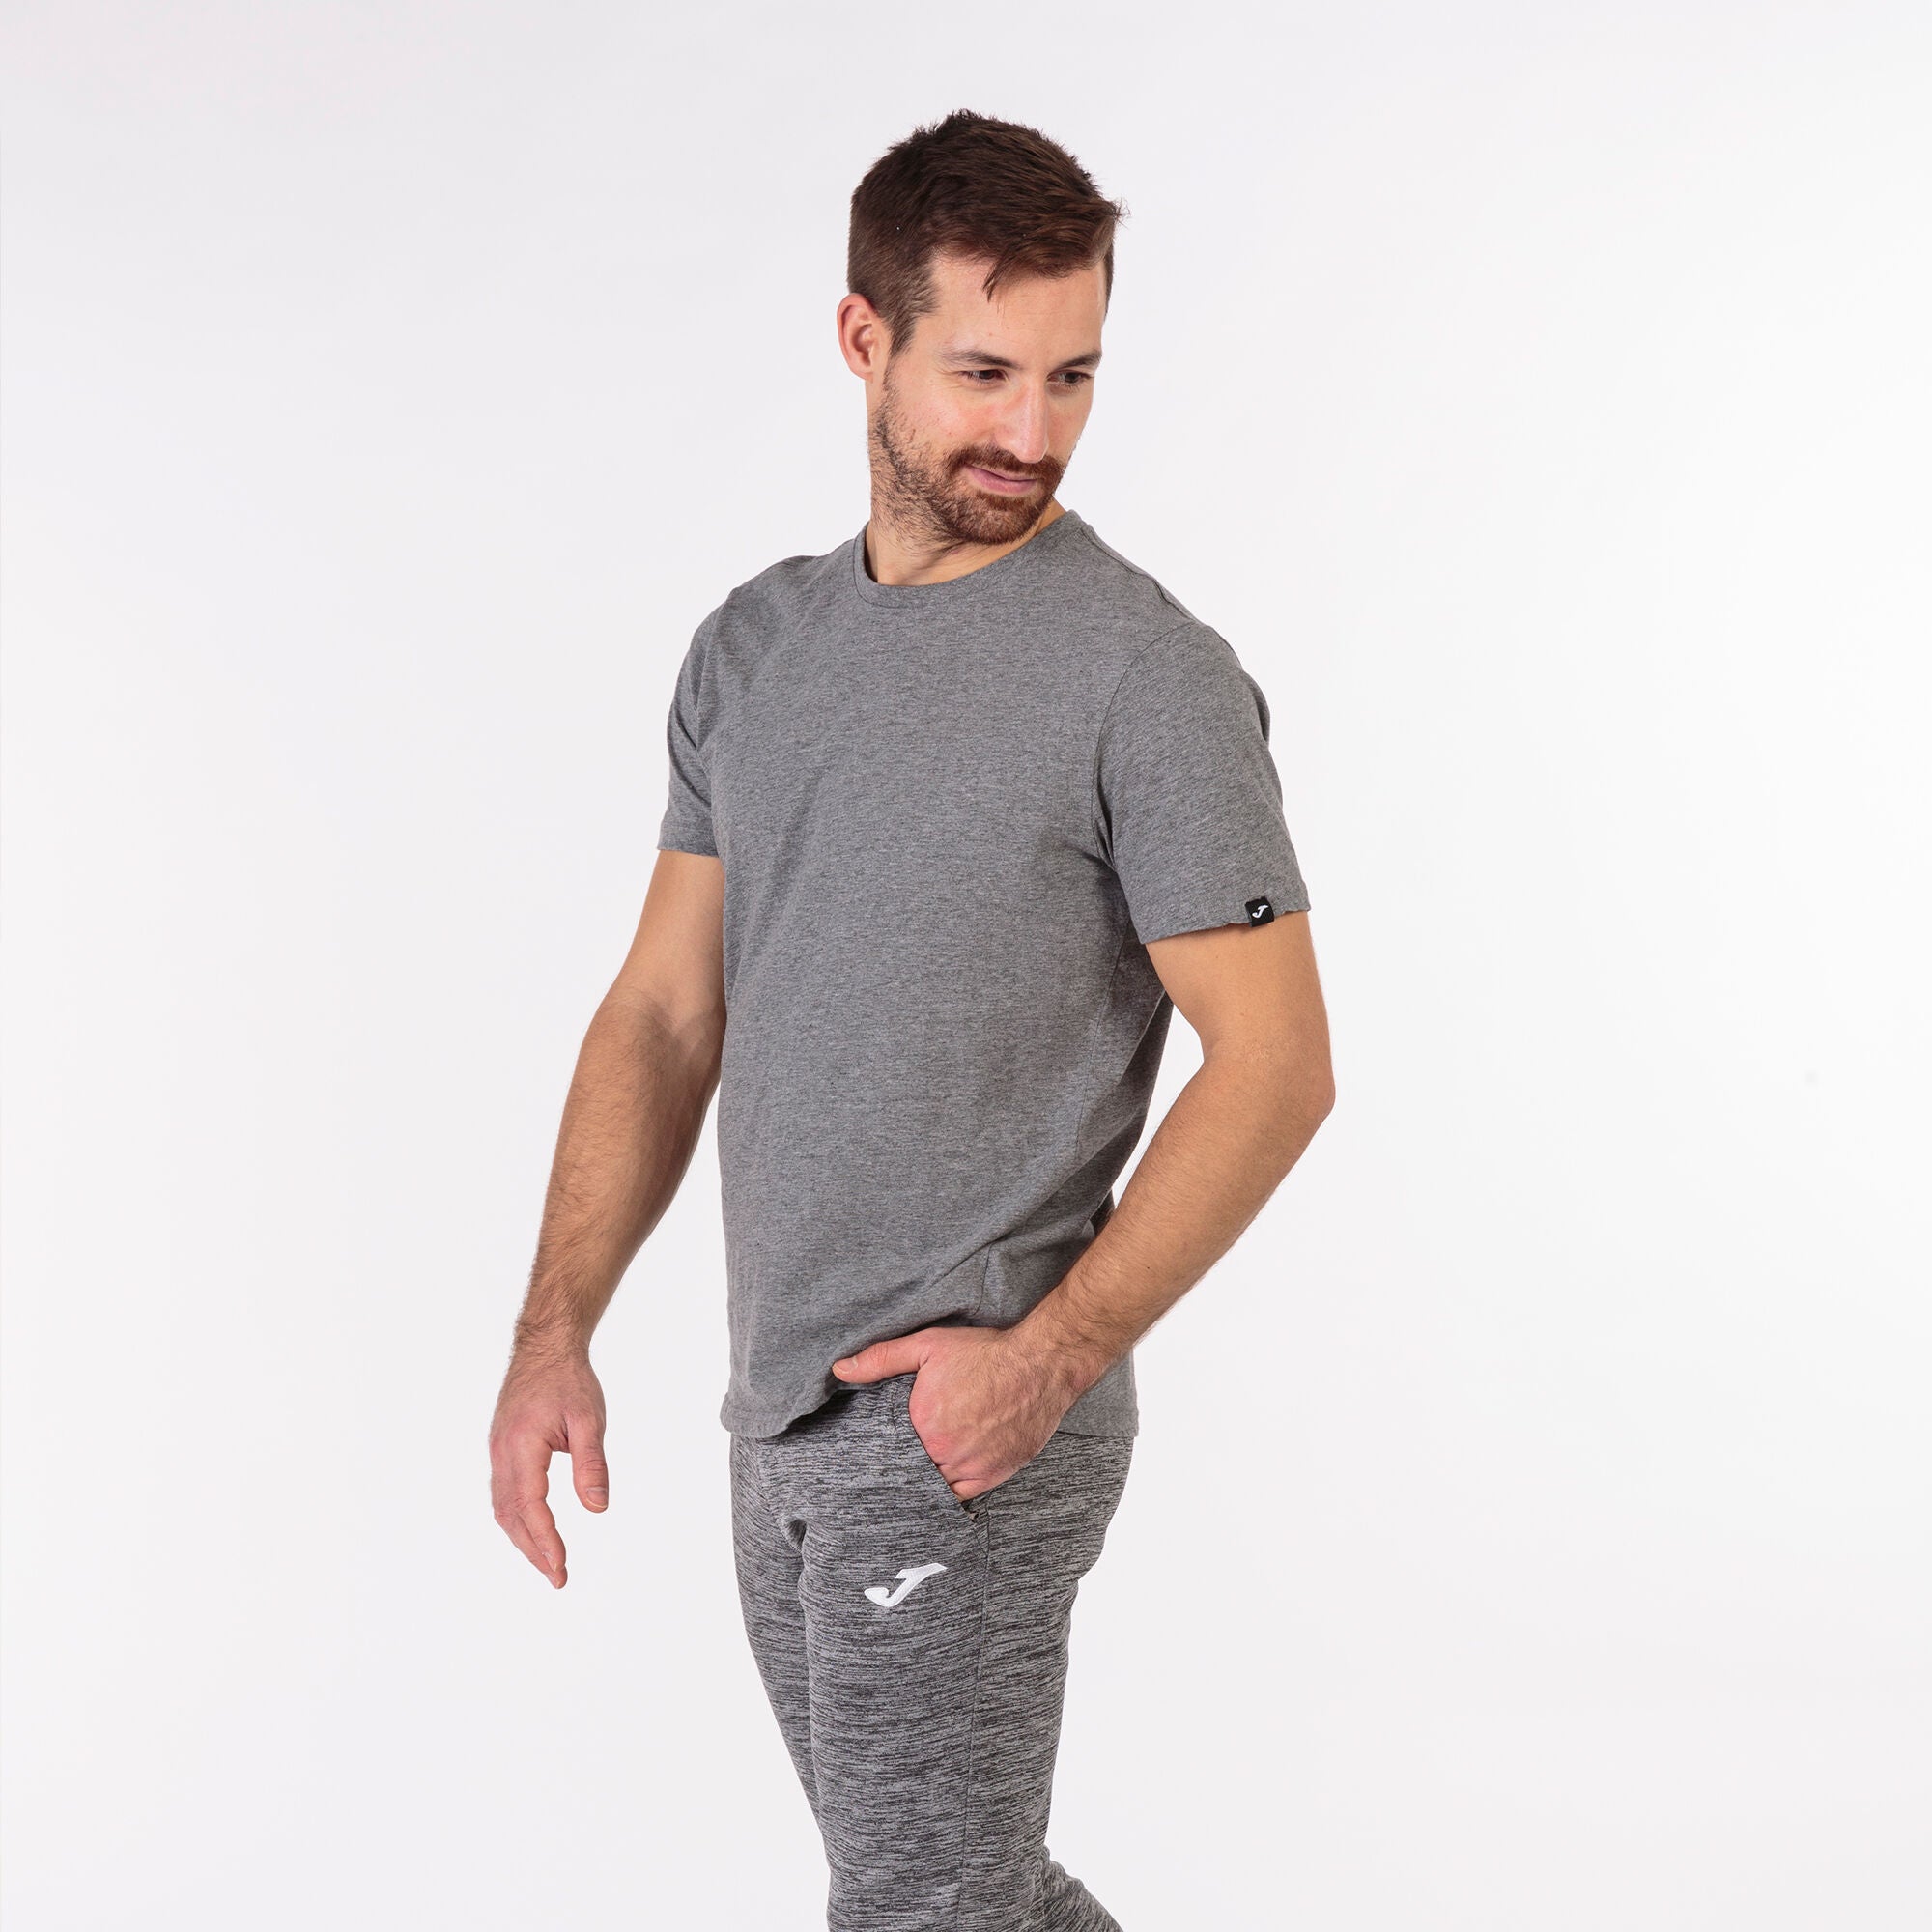 Joma Desert Plain Round Neck T-shirt Men's-2359-Grey